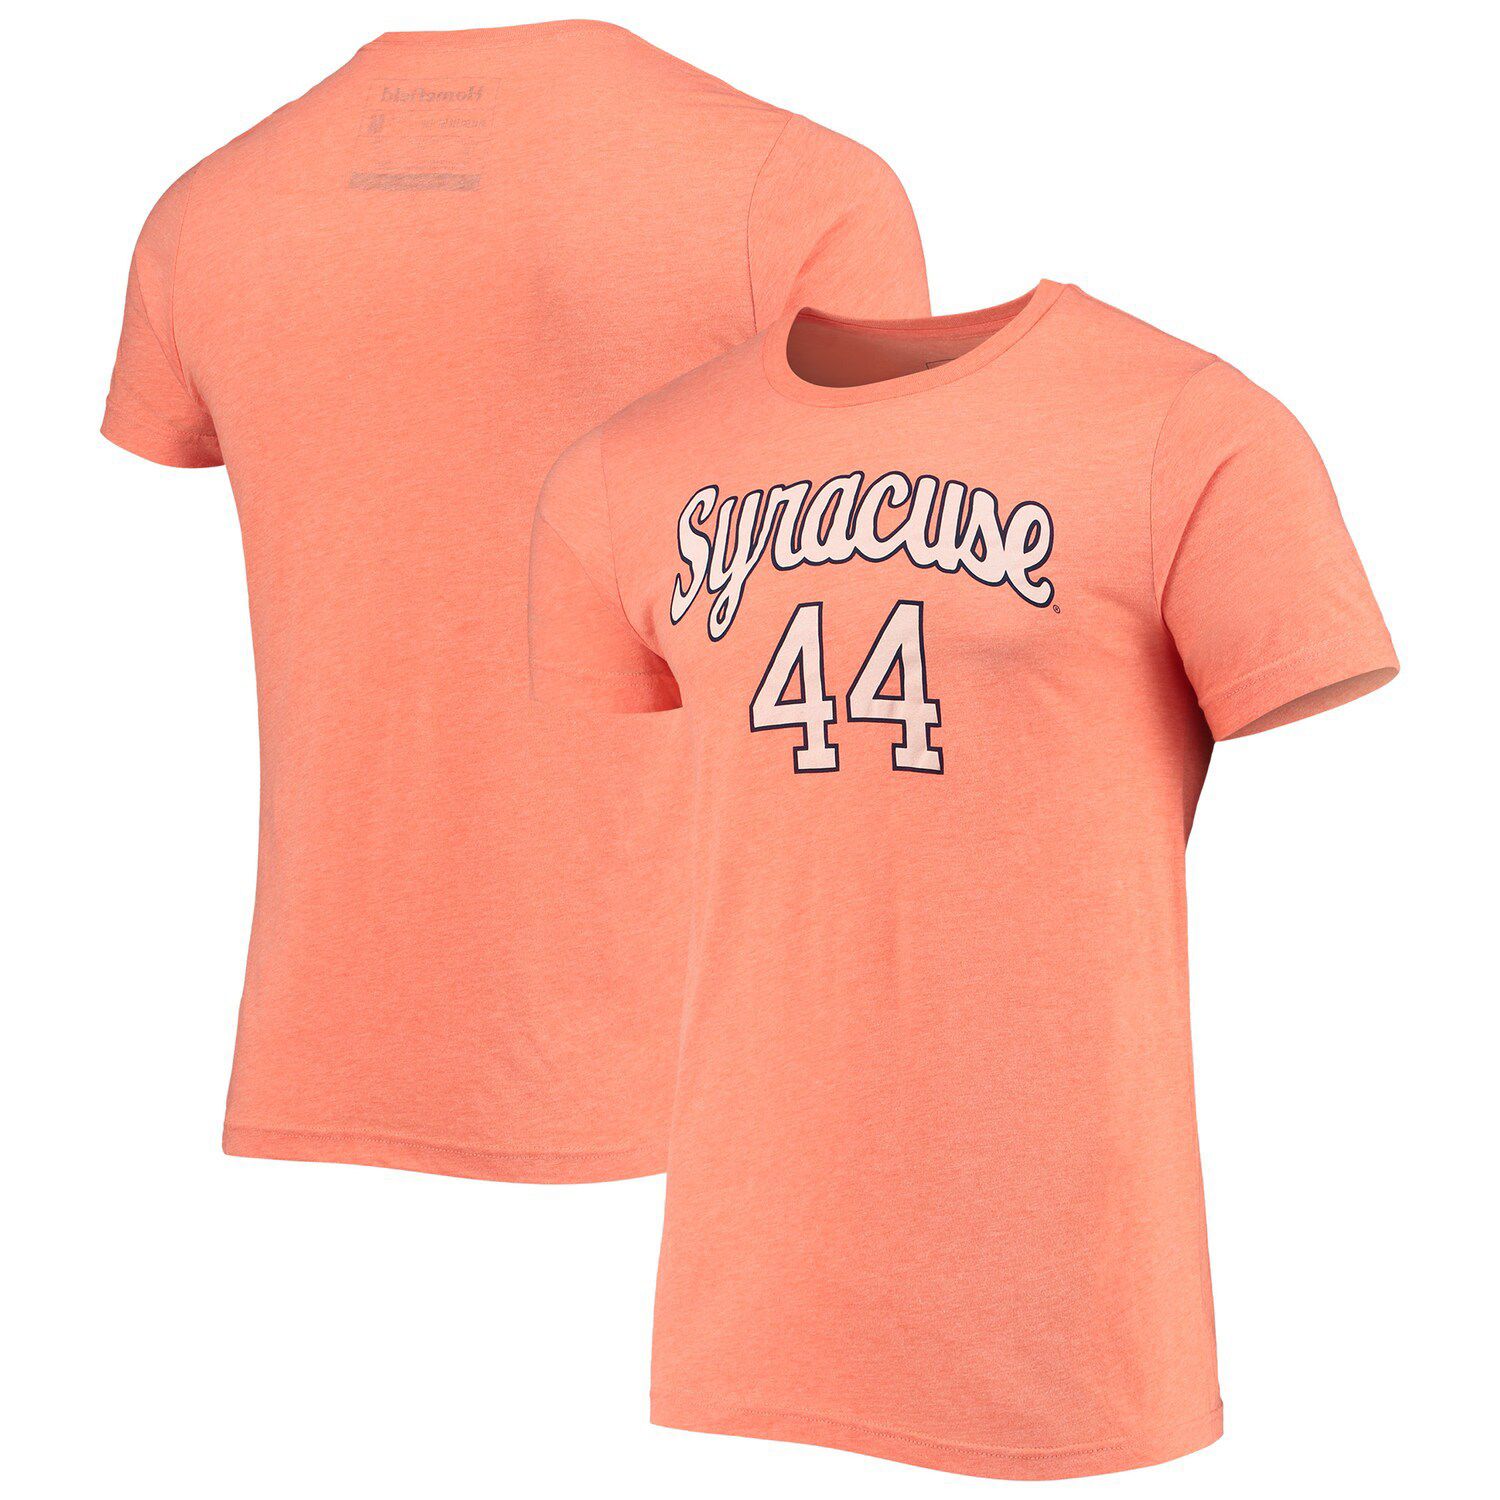 Image for Unbranded Men's Homefield Heathered Orange Syracuse Orange Vintage #44 Tri-Blend T-Shirt at Kohl's.